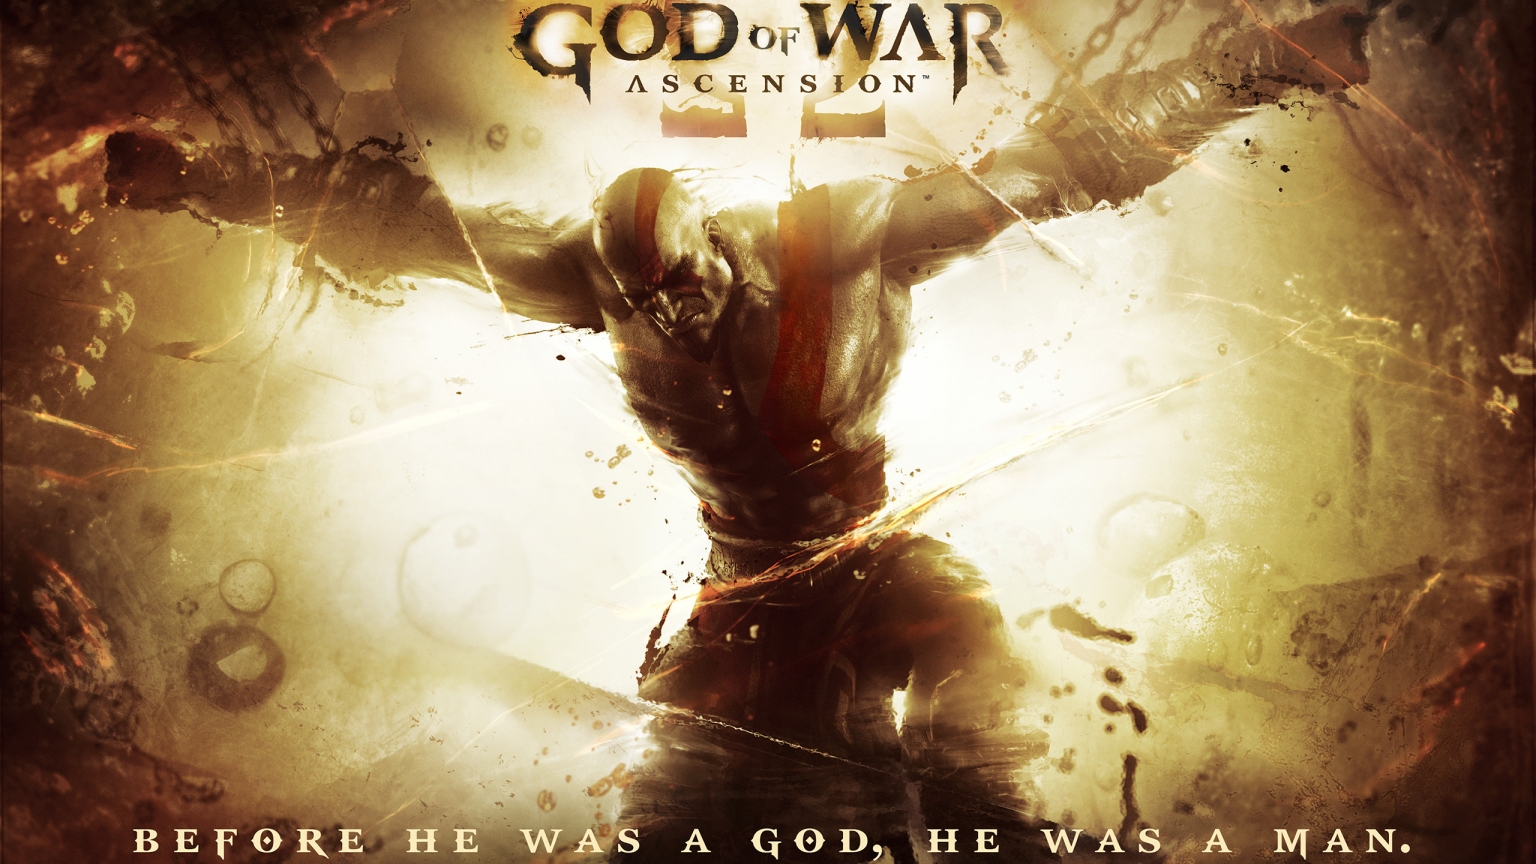 God of War Ascension 2013 for 1536 x 864 HDTV resolution